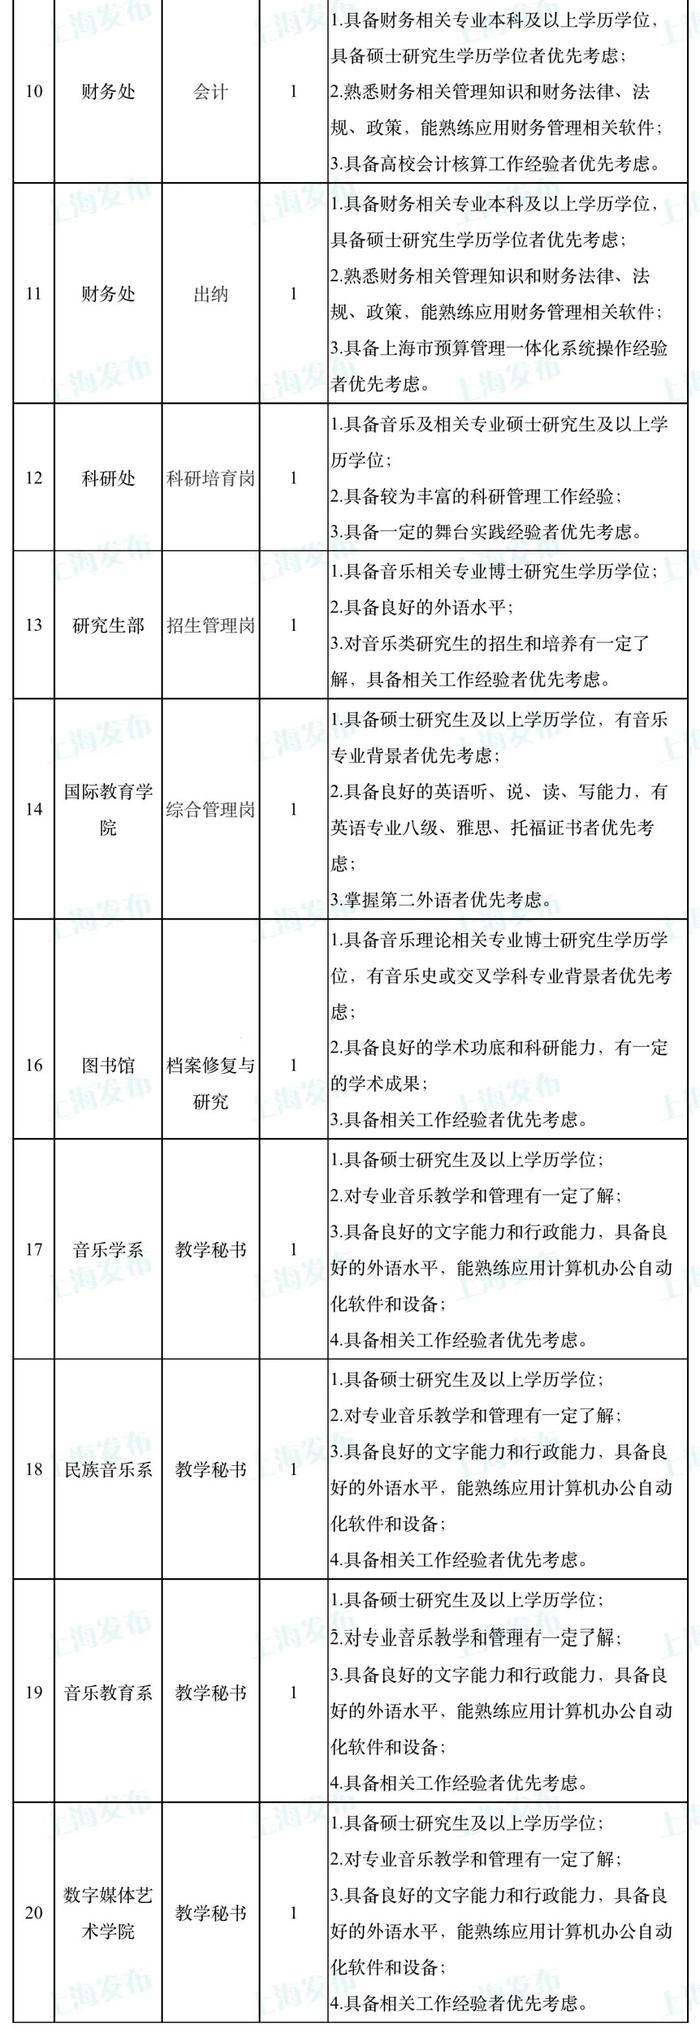 【就业】上海音乐学院招聘20名工作人员，7月17日前可报名